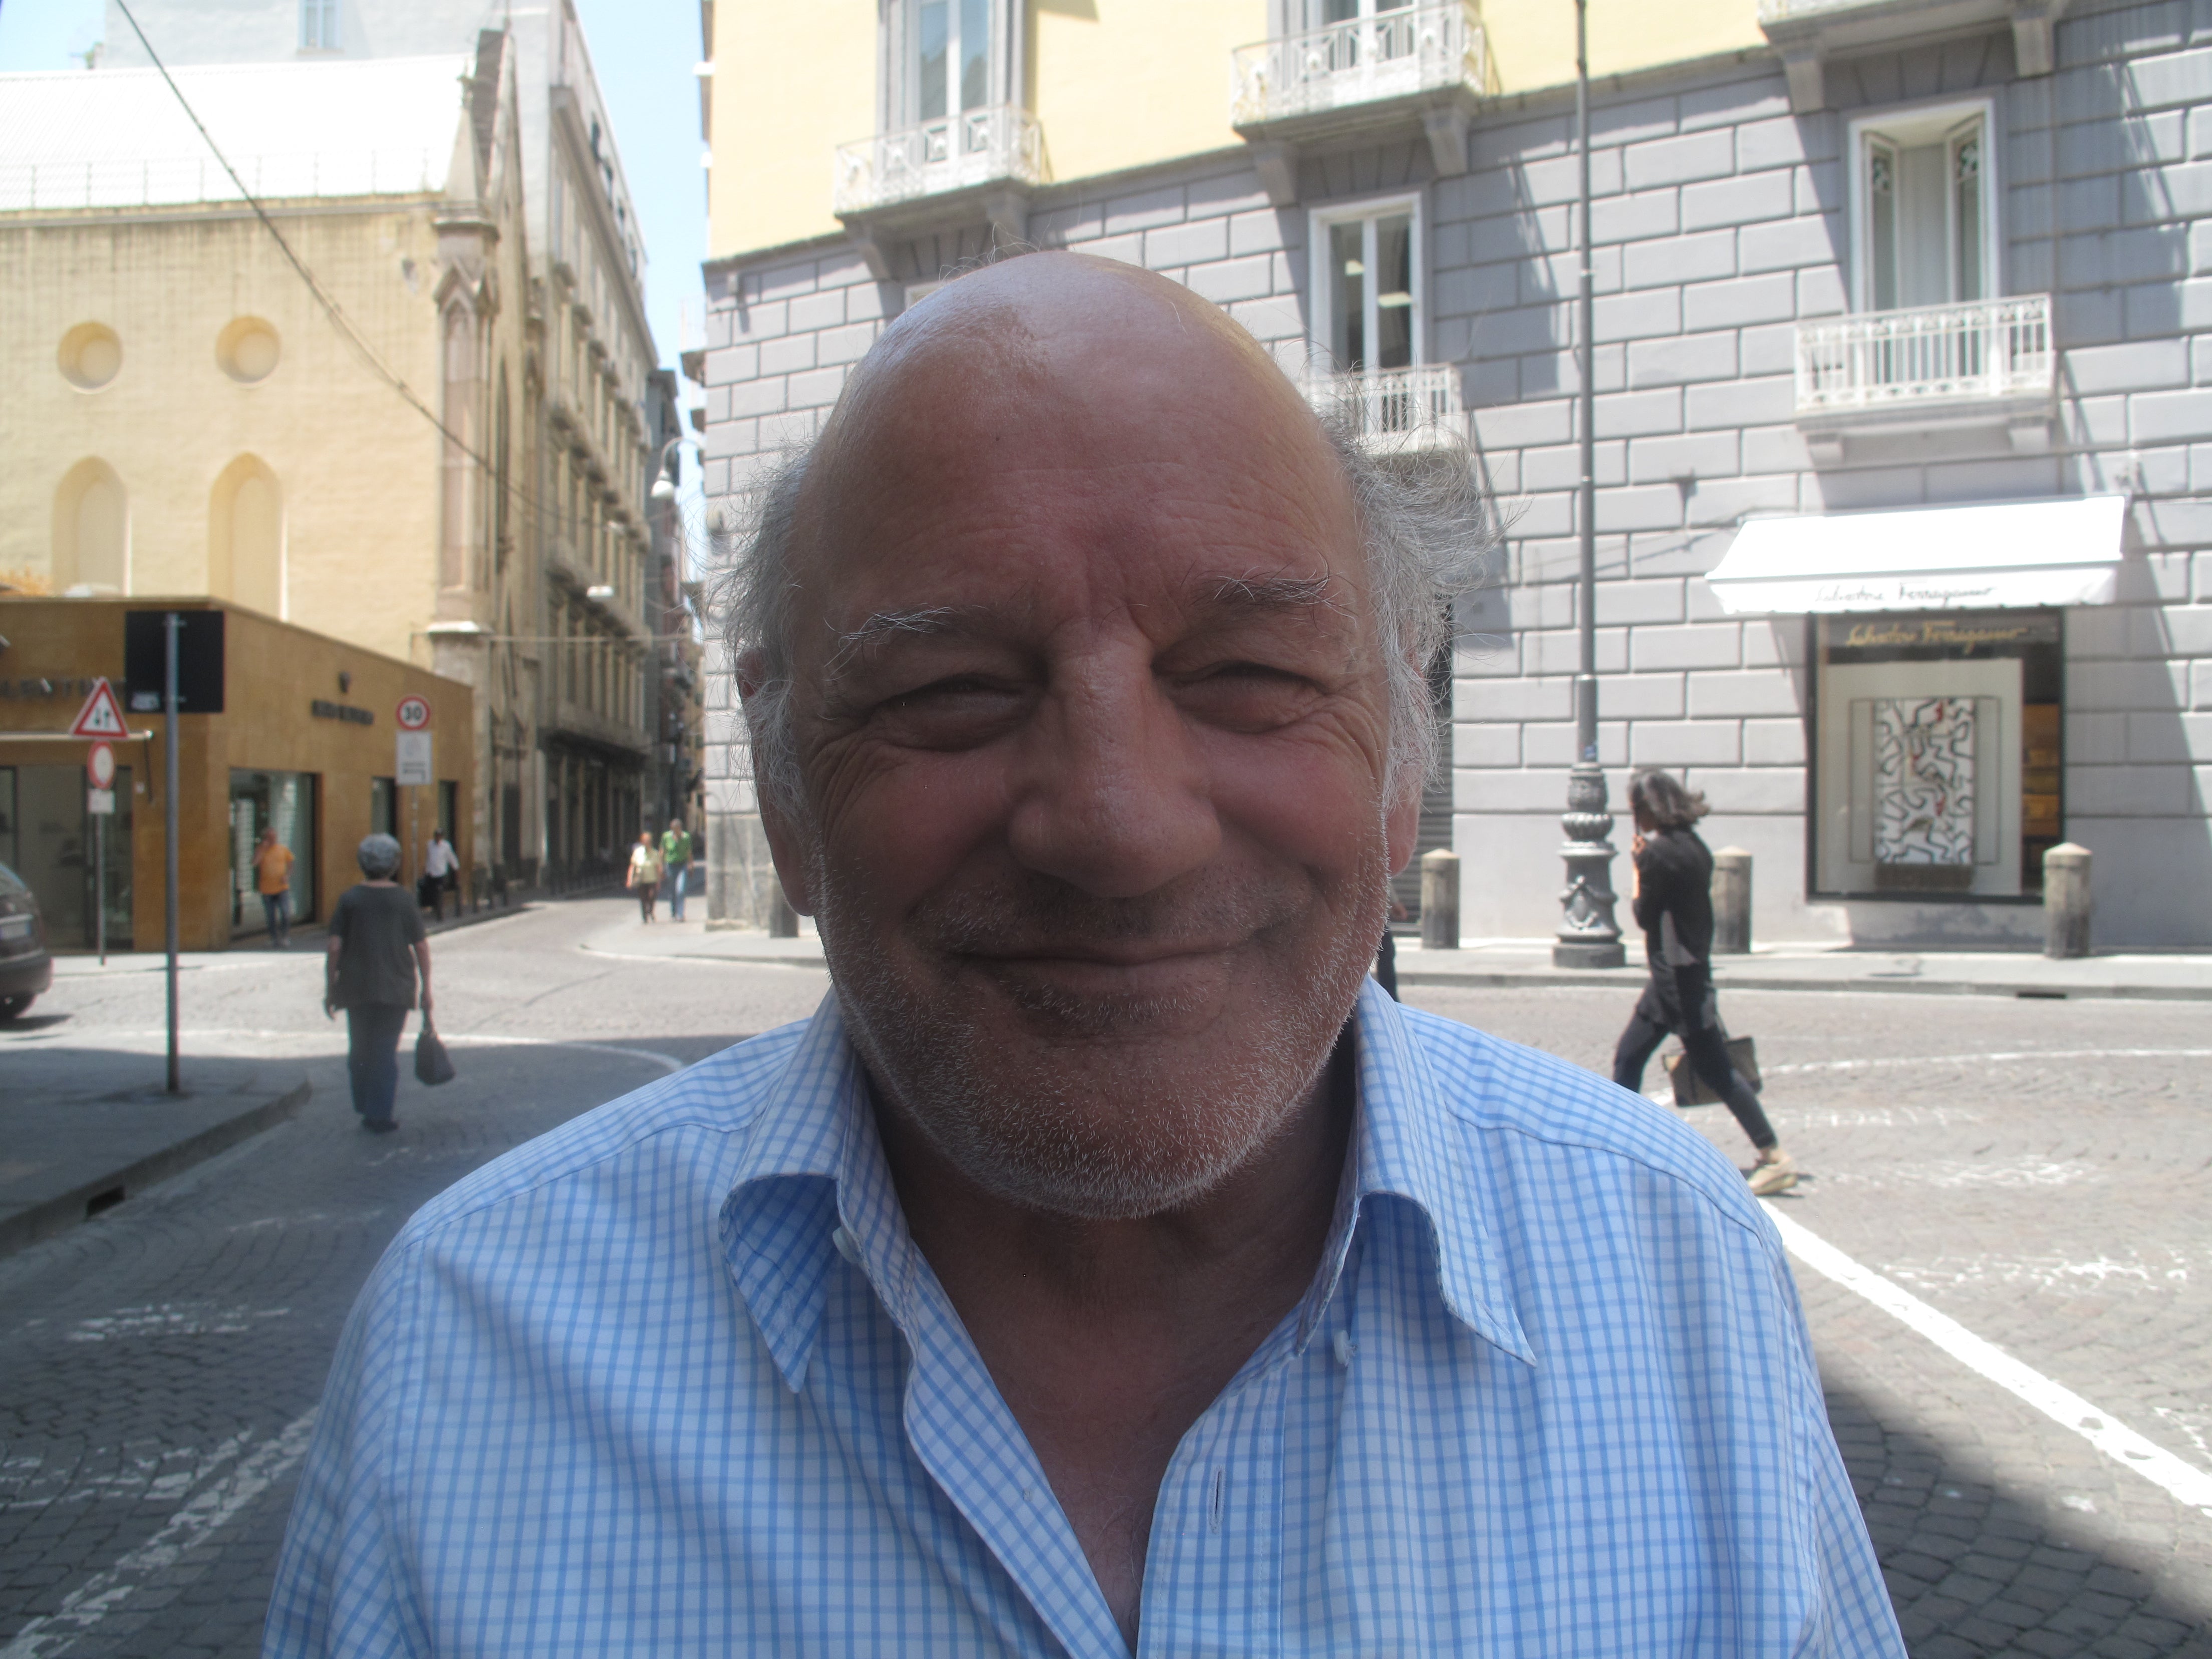 Armando Aubry, a taxi driver who drove Maradona around Naples